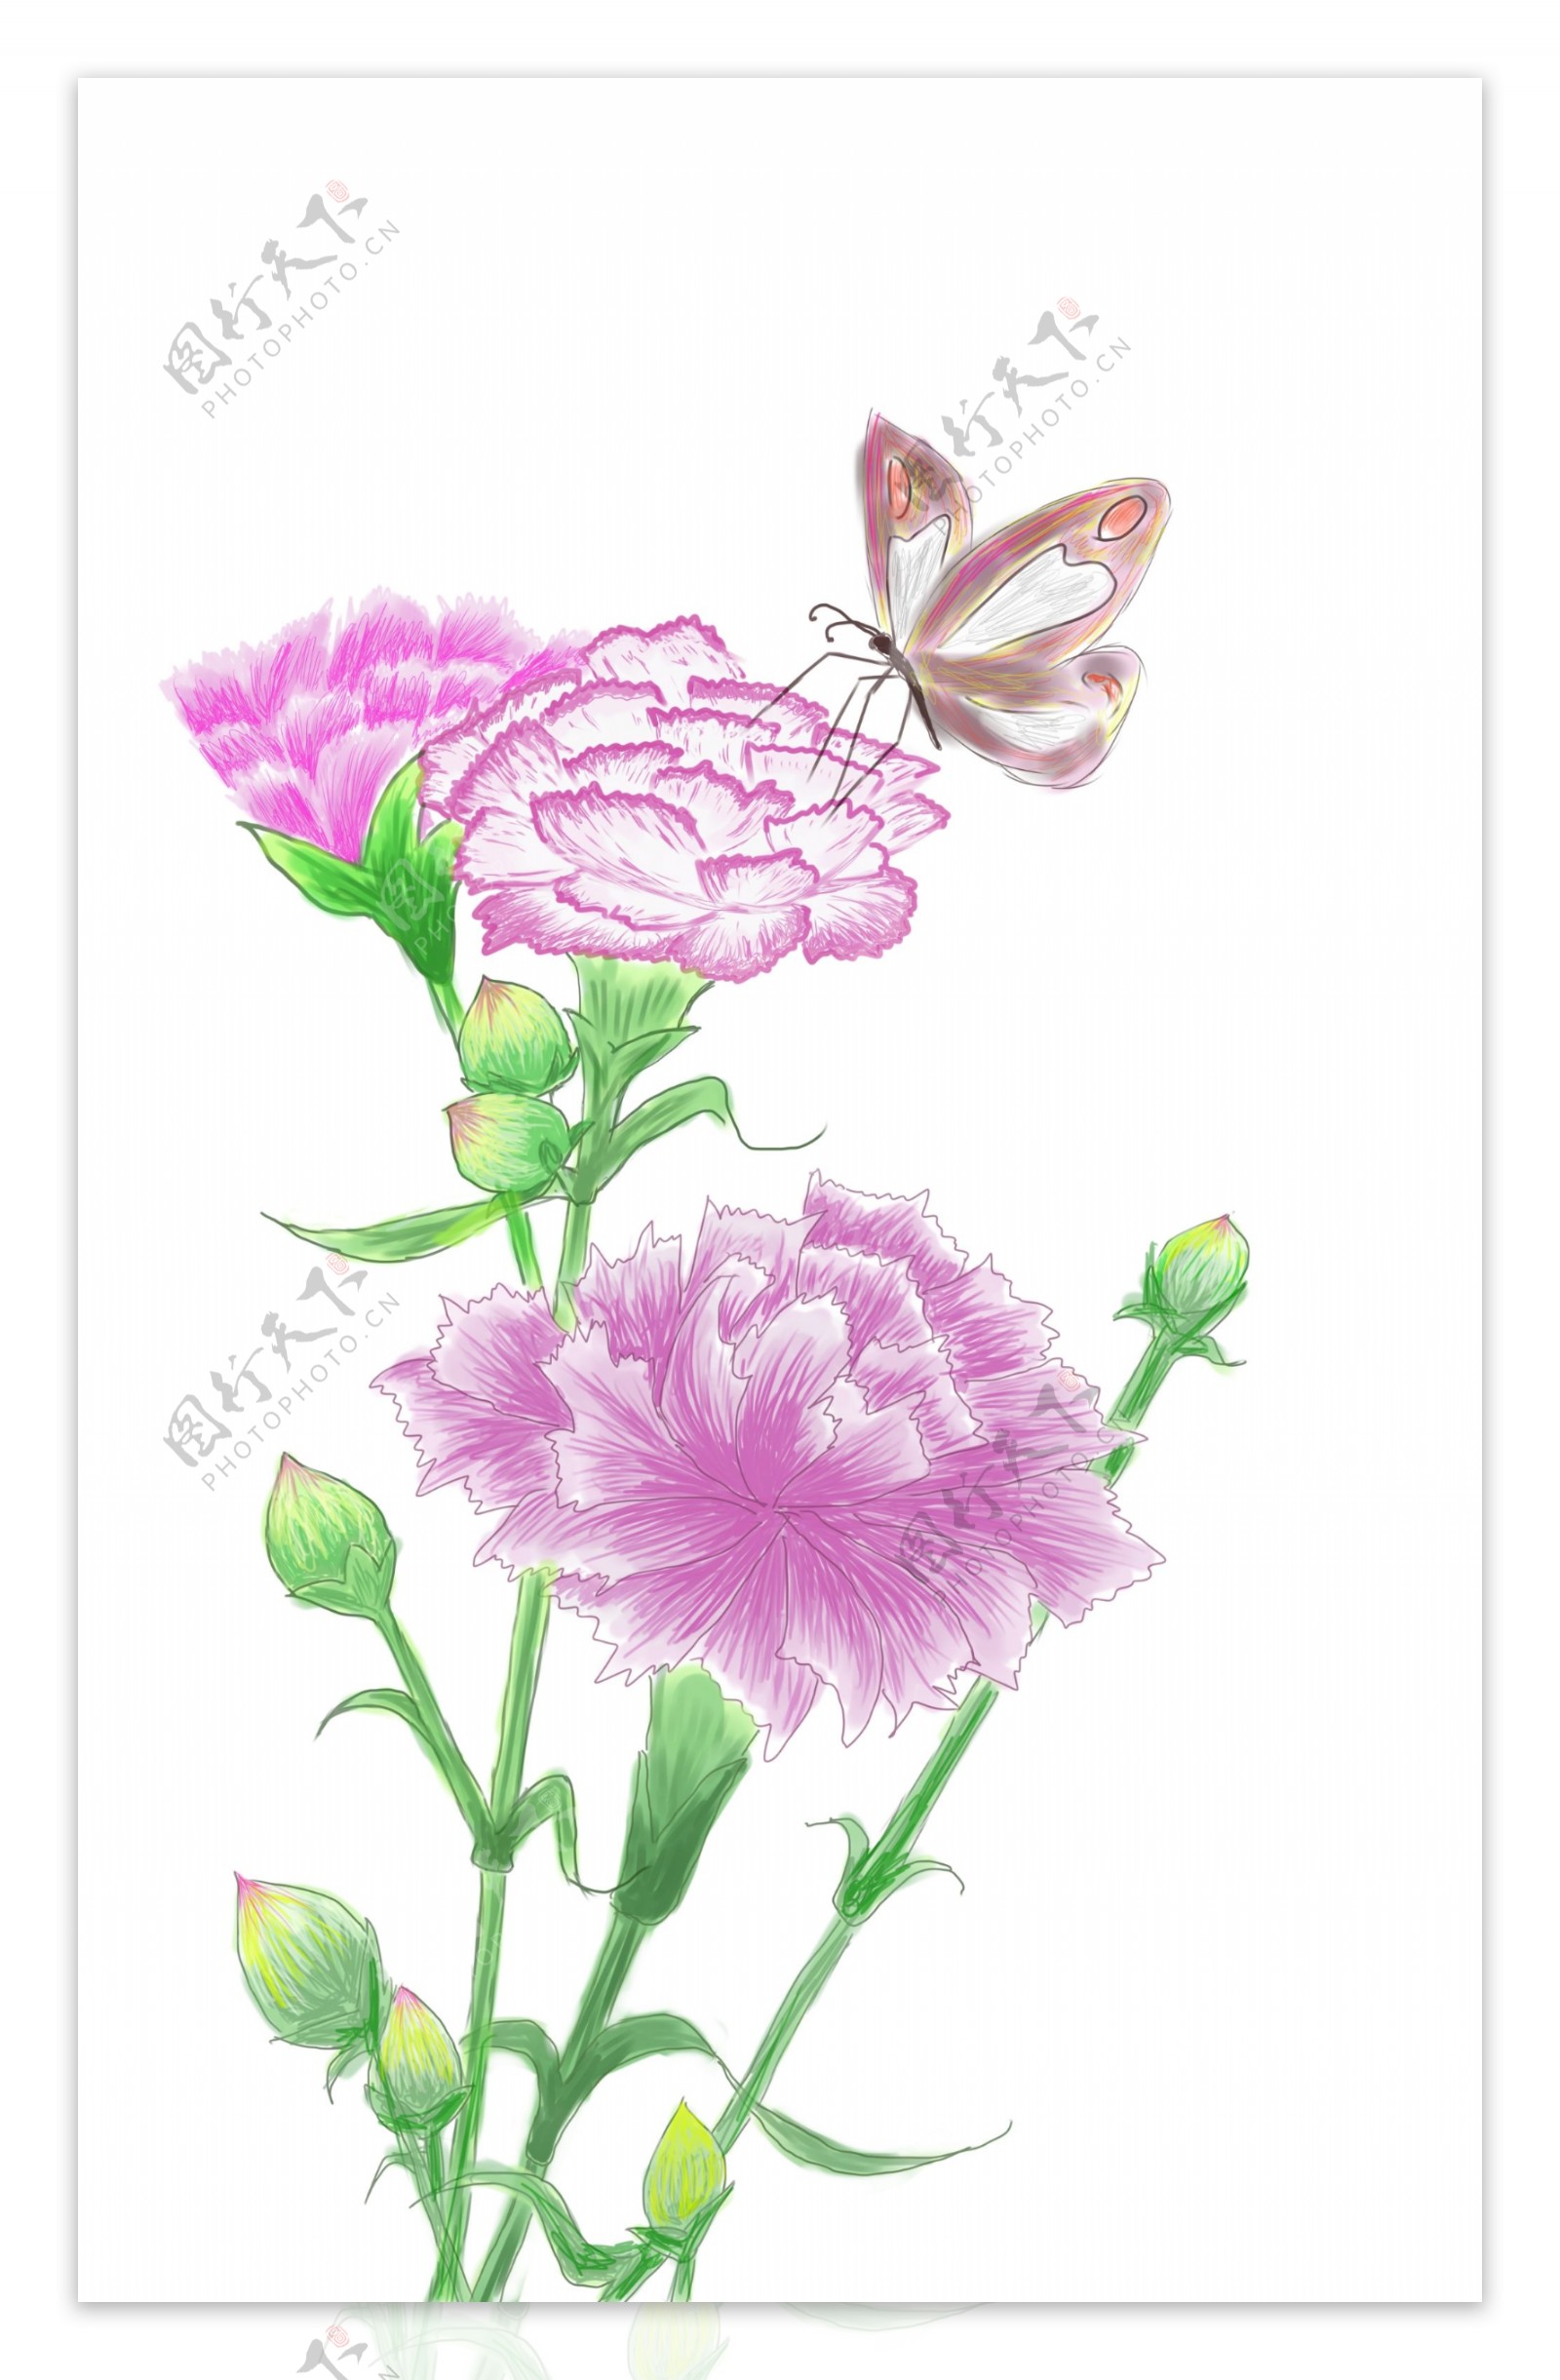 母亲节康乃馨手绘花朵蝴蝶元素